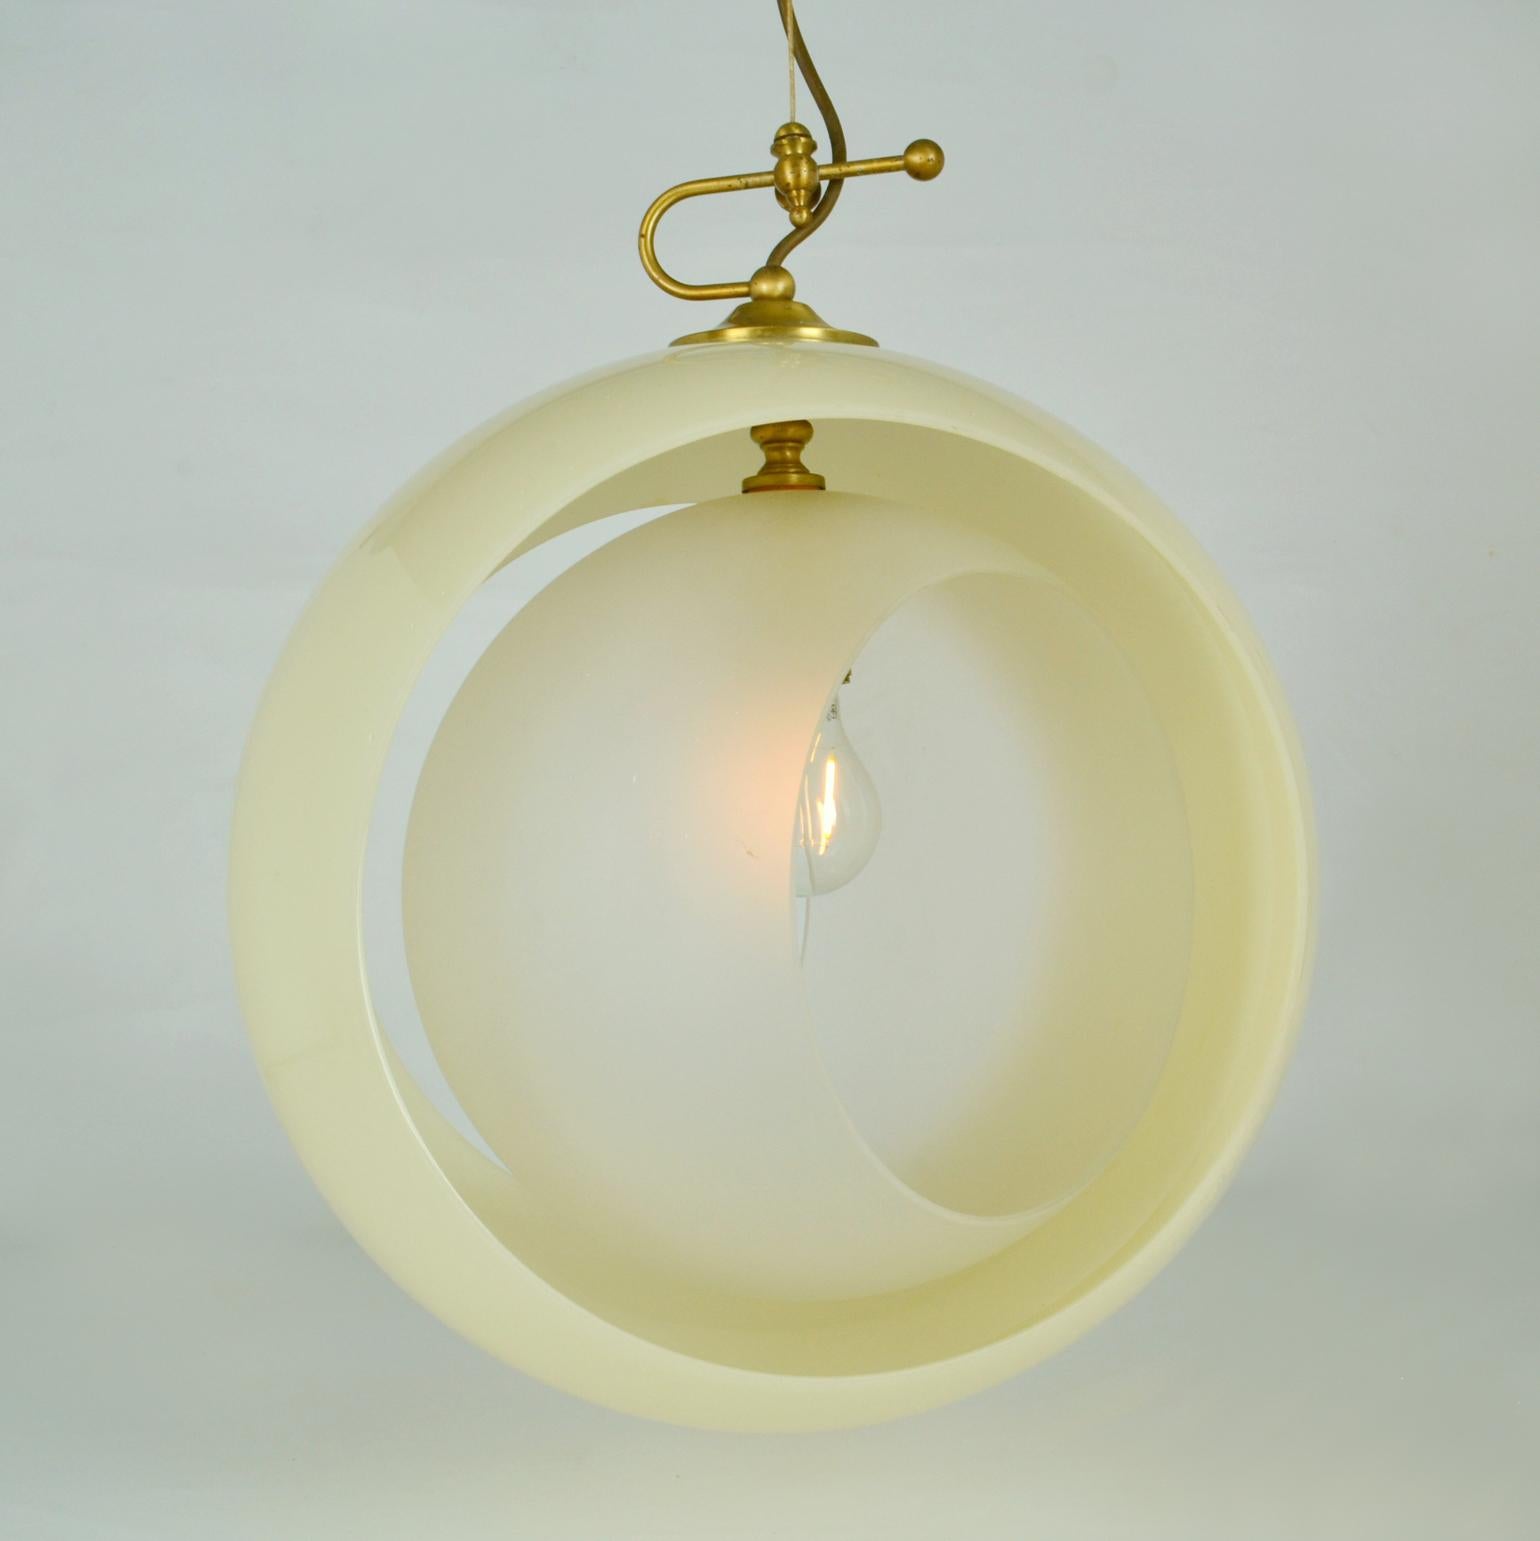 Minimalist Italian Glass Pendant by Carlo Nason Mazzega, Eclipse, Venice 1960s For Sale